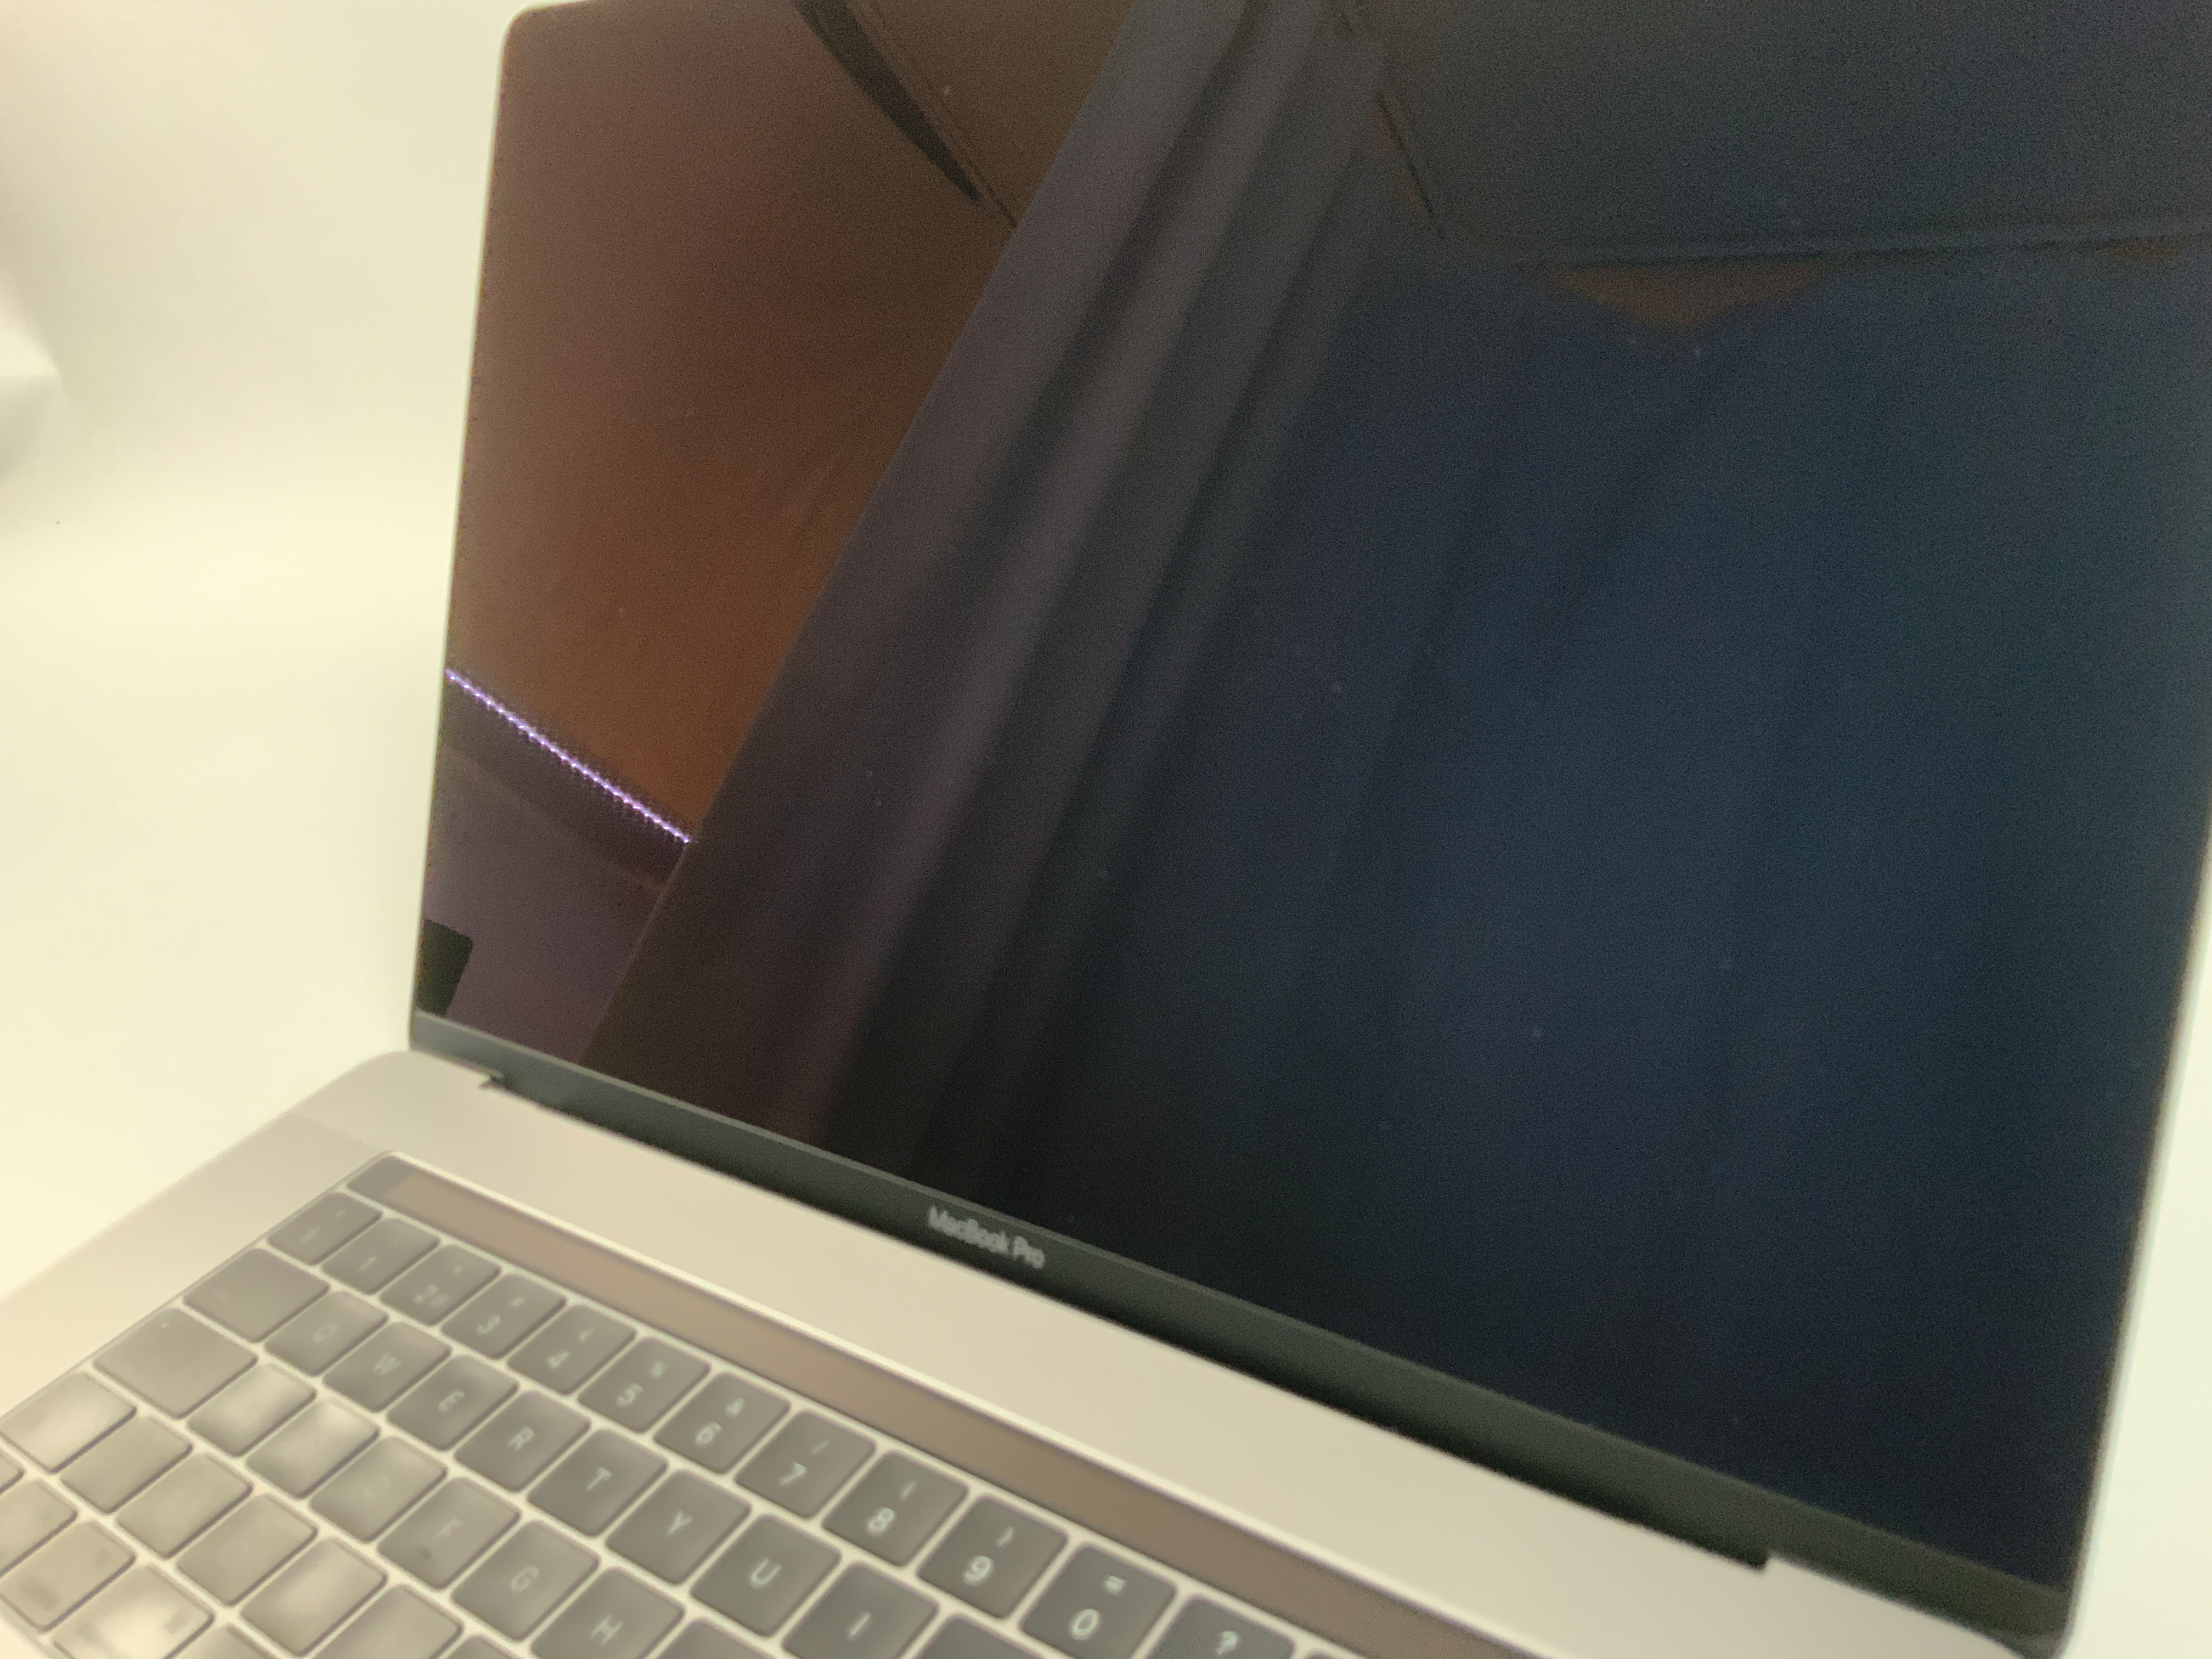 MacBook Pro 15" Touch Bar Late 2016 (Intel Quad-Core i7 2.6 GHz 16 GB RAM 256 GB SSD), Space Gray, Intel Quad-Core i7 2.6 GHz, 16 GB RAM, 256 GB SSD, Bild 3